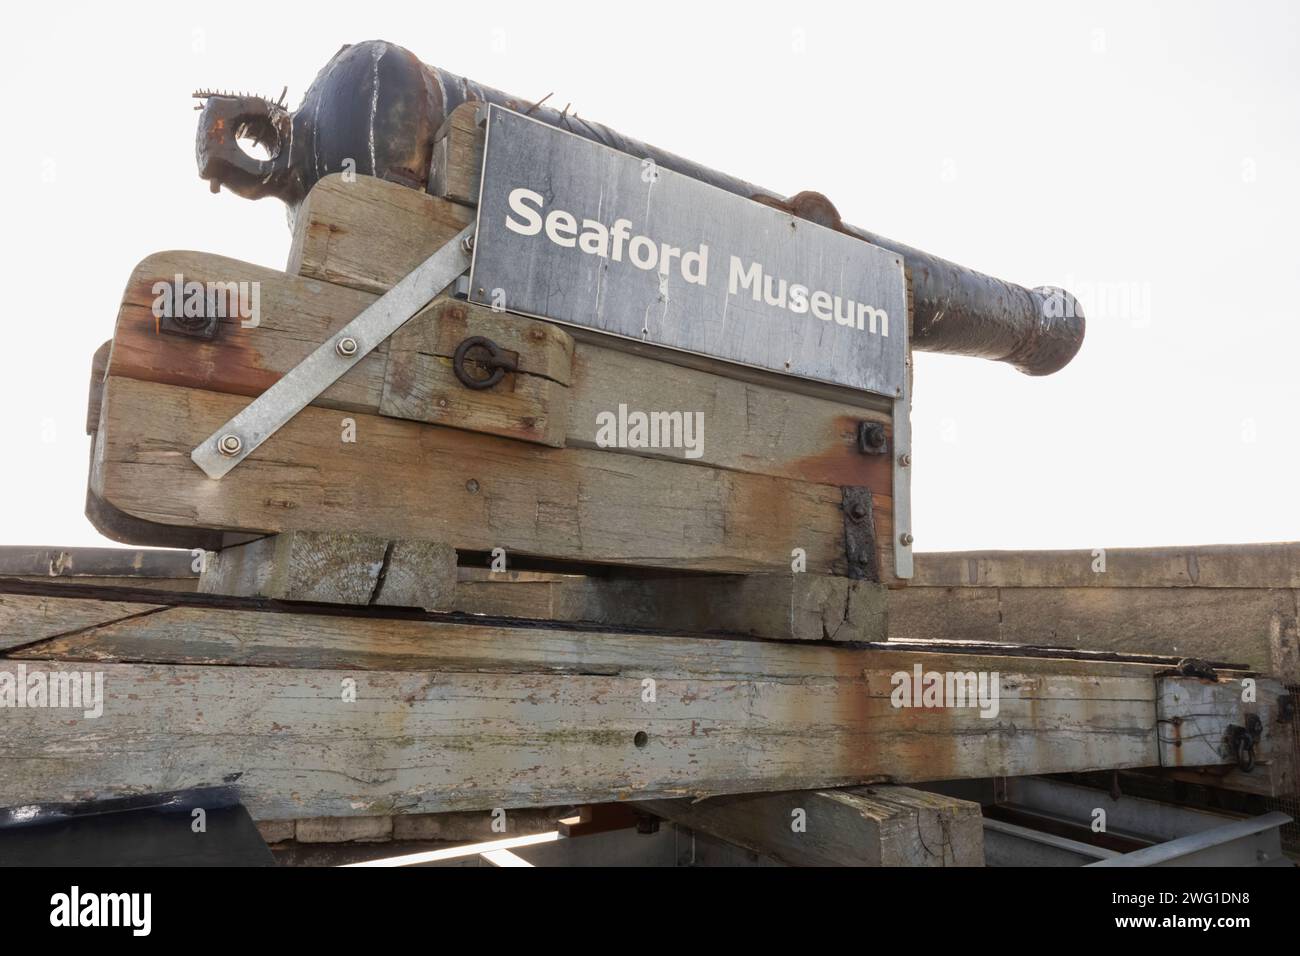 England, Sussex, East Sussex, Seaford, Seaford Museum, Die Historische Kanone Auf Dem Dach Stockfoto